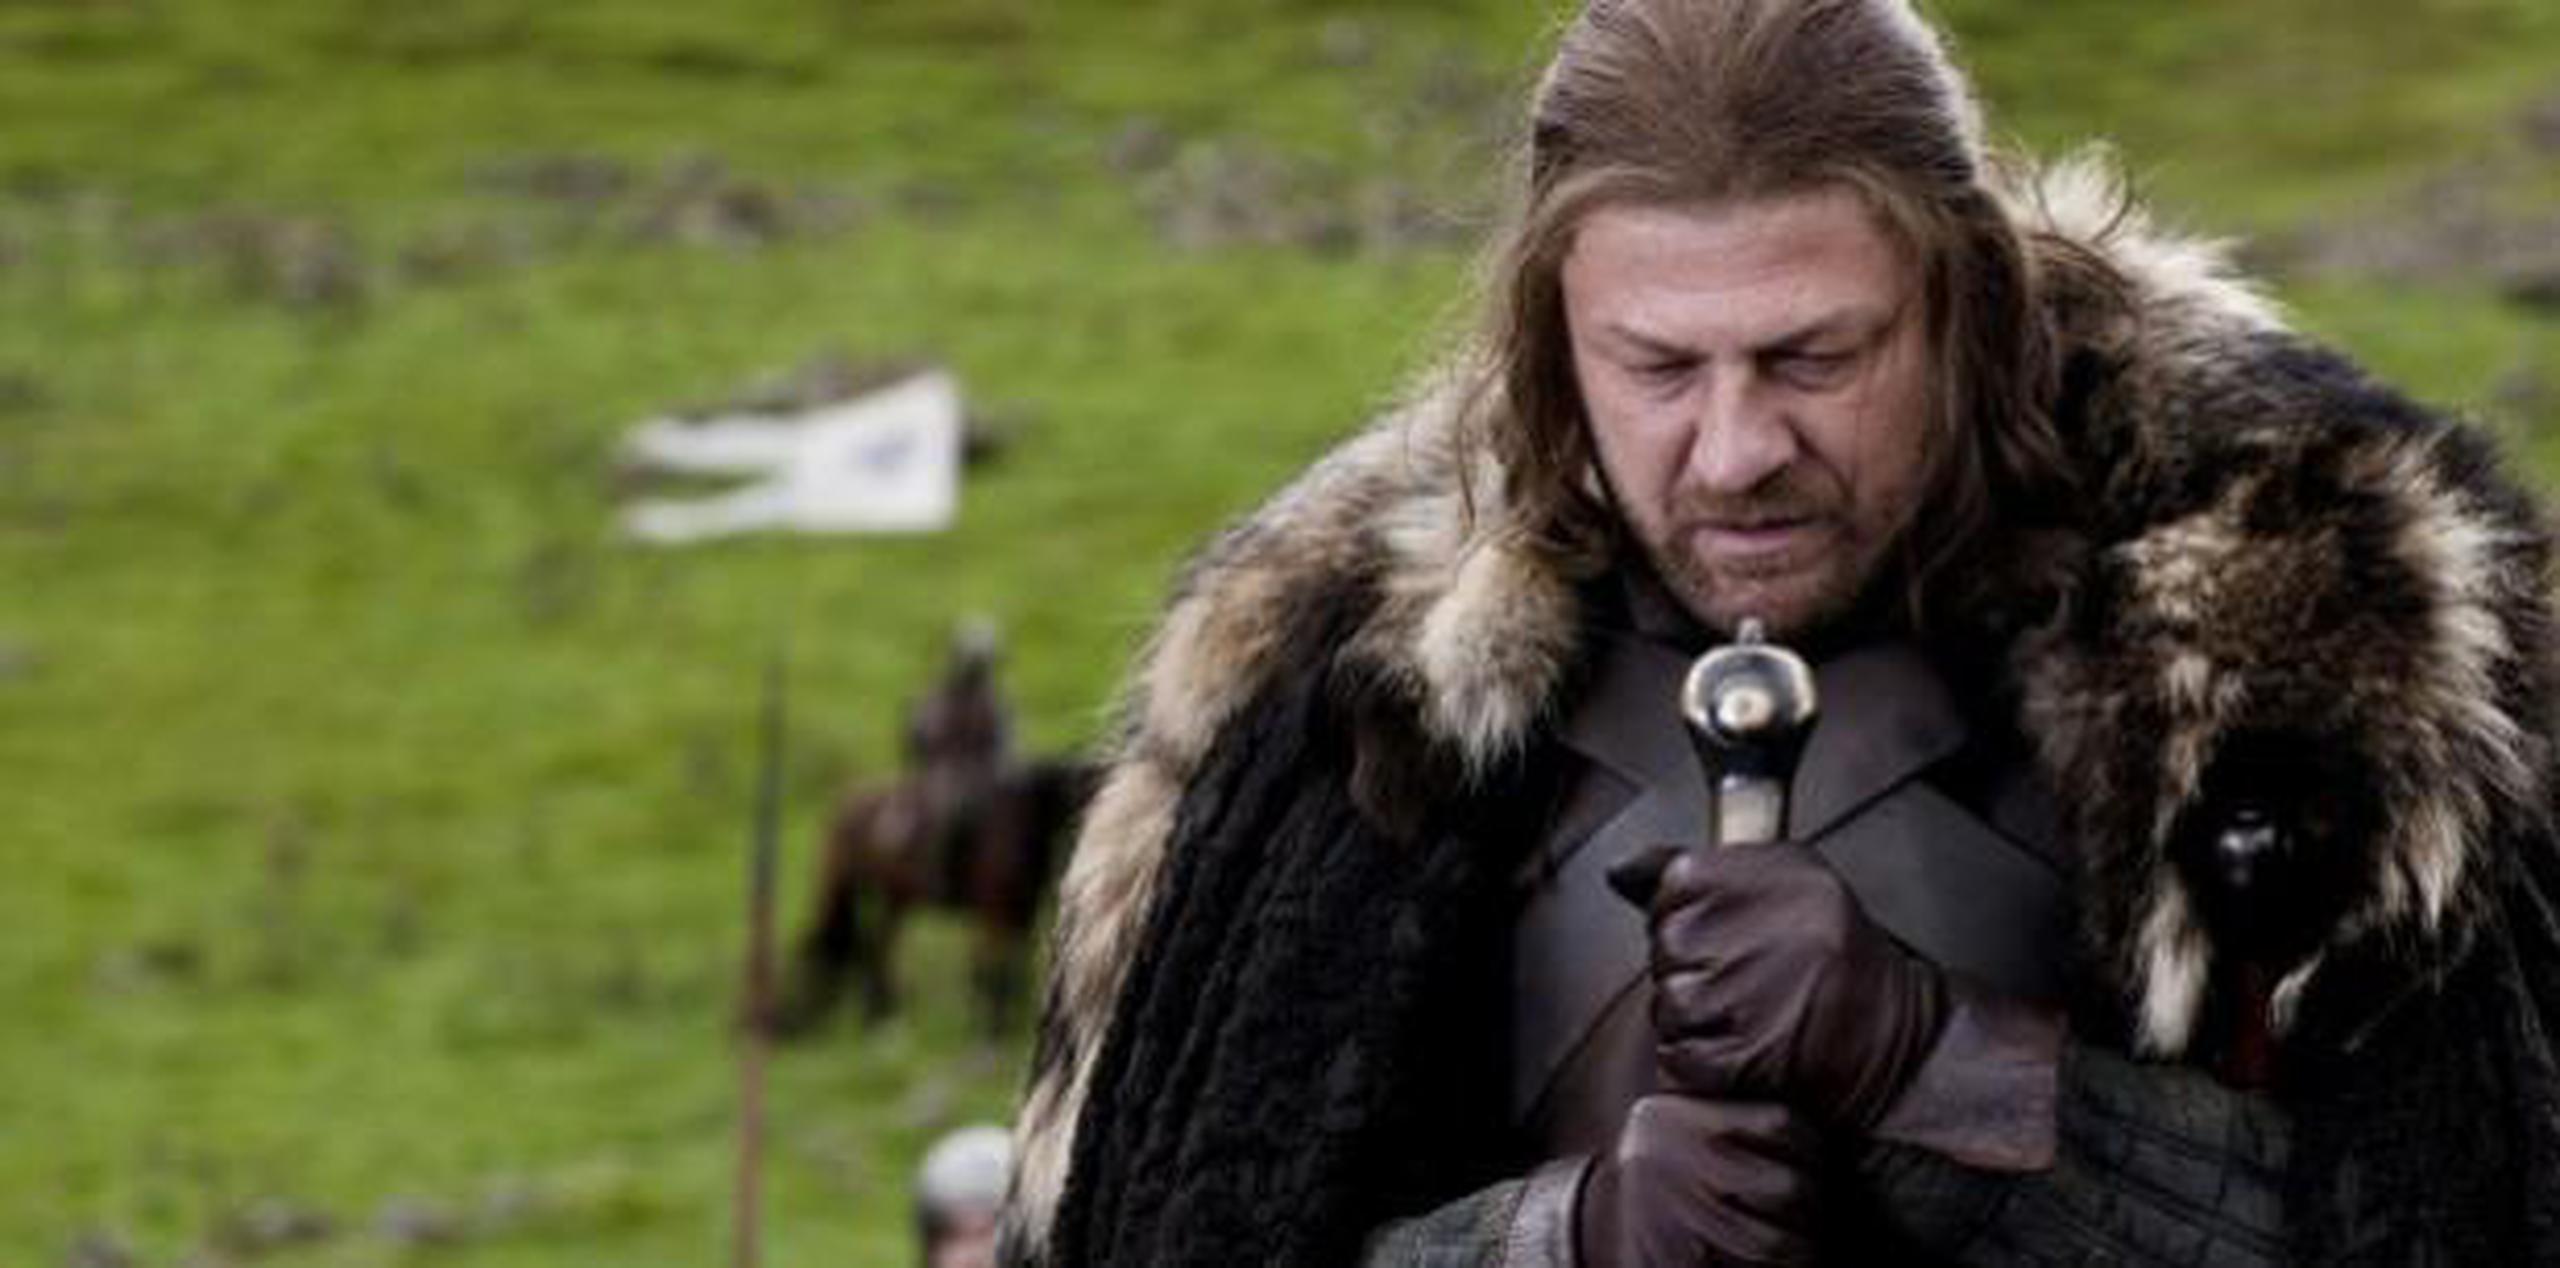 Sean Bean como Ned Stark en "Game of Thrones" (2011), personaje que es decapitado al final de la primera temporada. (AP/HBO/GDA)